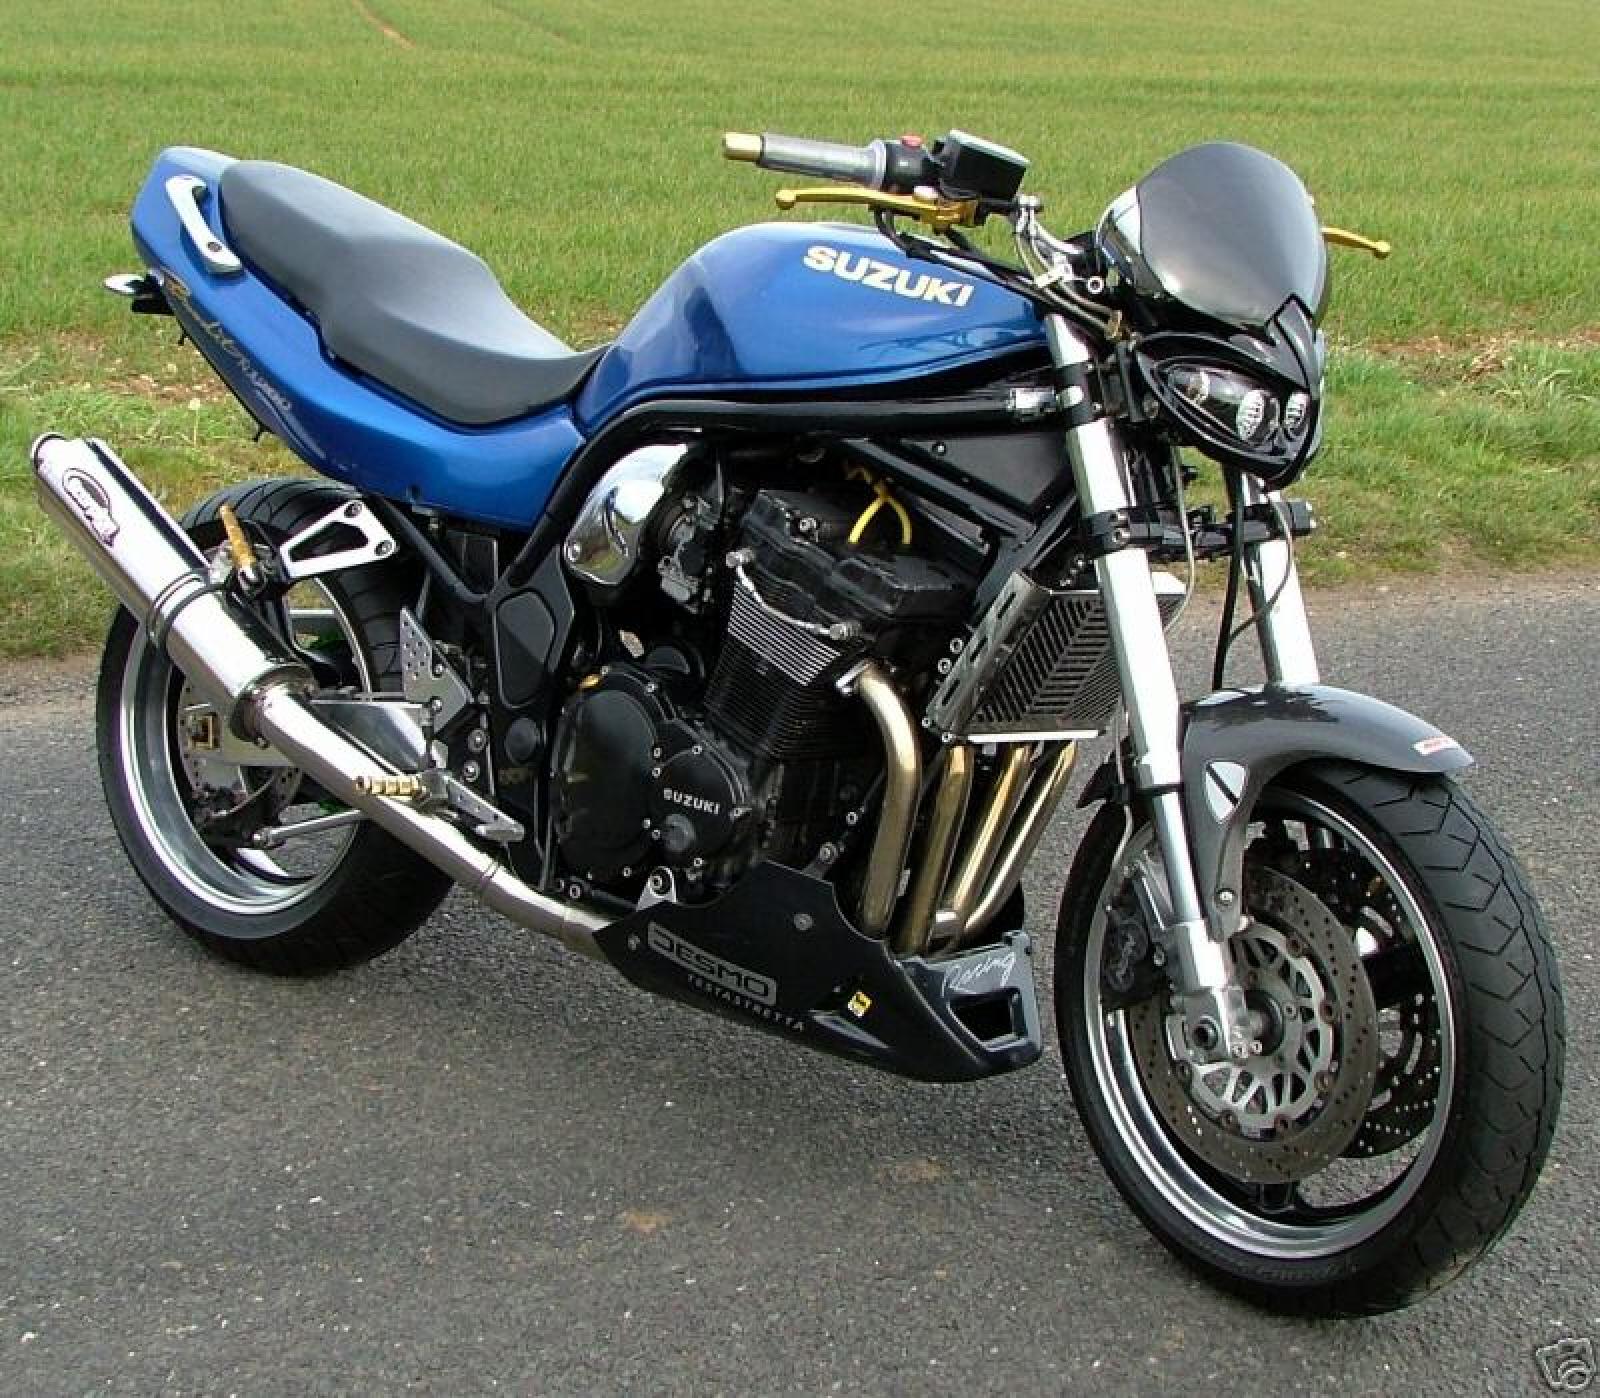 Dynomite Motorcycles - 1999 Suzuki GSF 600 Bandit 